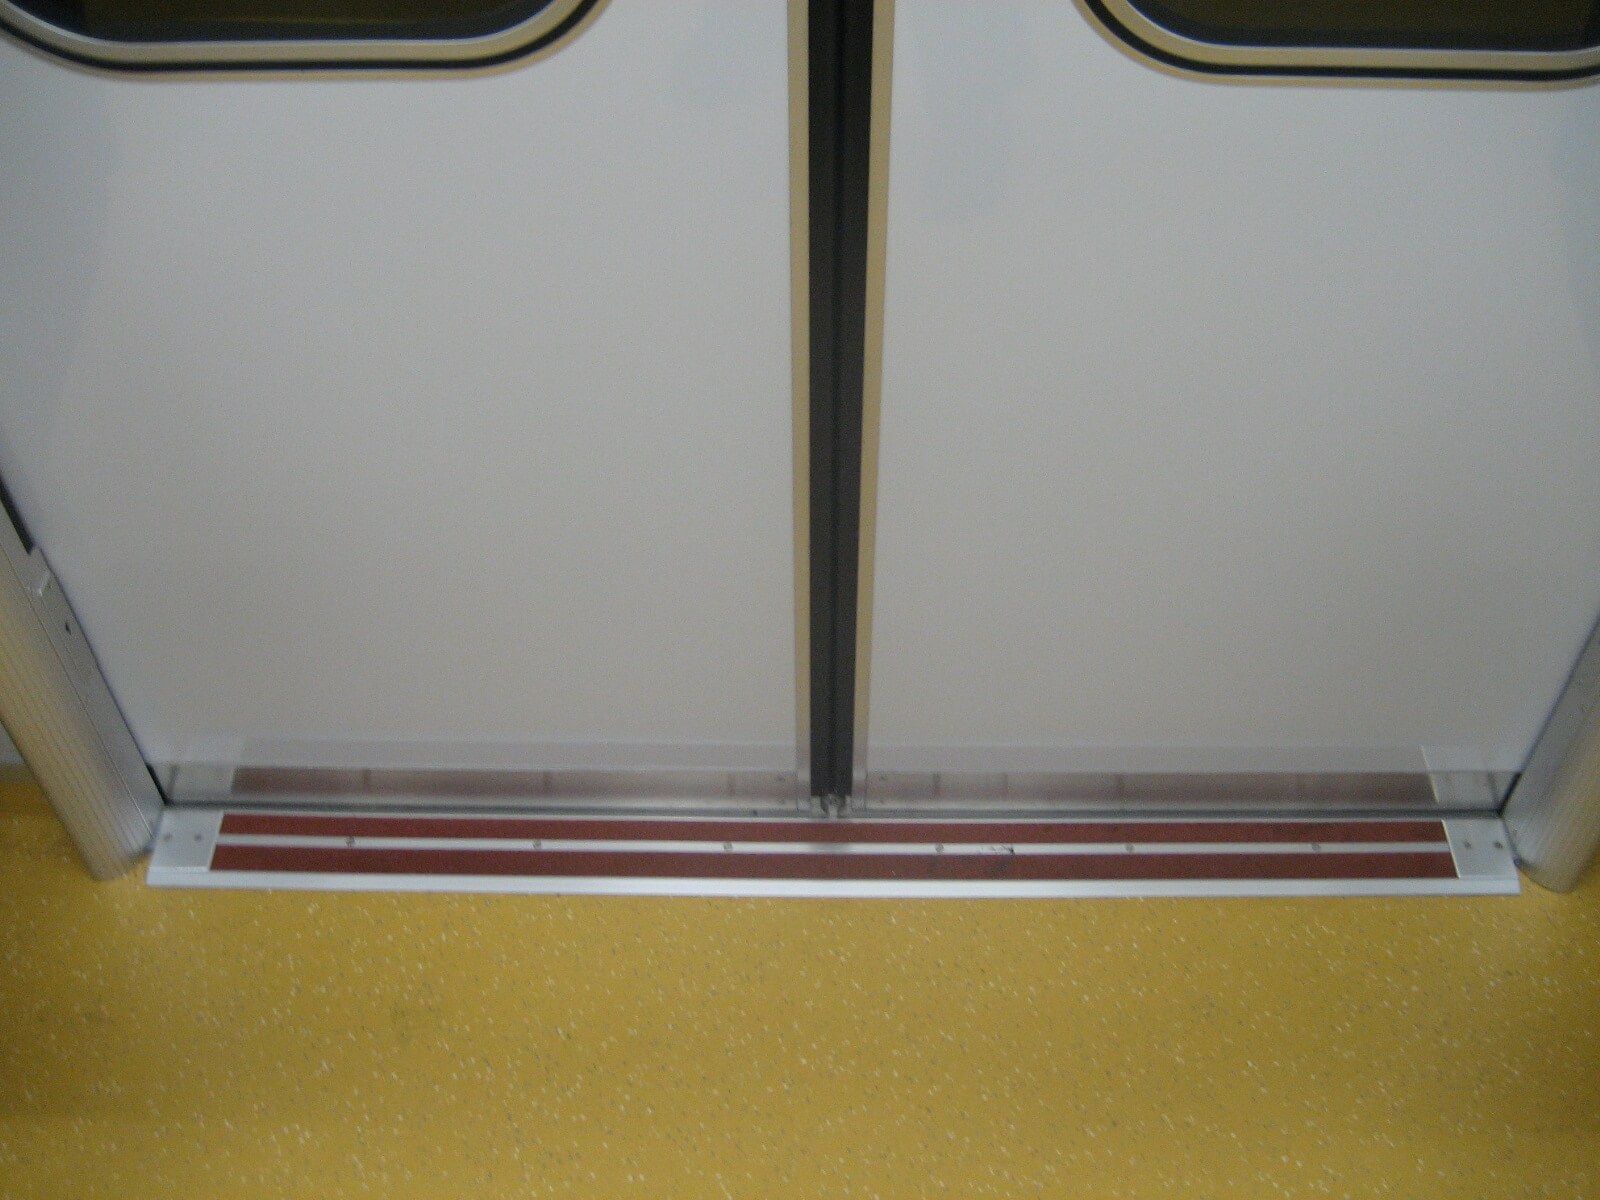 東京メトロ地下鉄車両の見切材として各車両ドアの床面に設置されたハイブリッドストーン アベイラス アンプロップをドアが閉まった状態で車両内から見た拡大図